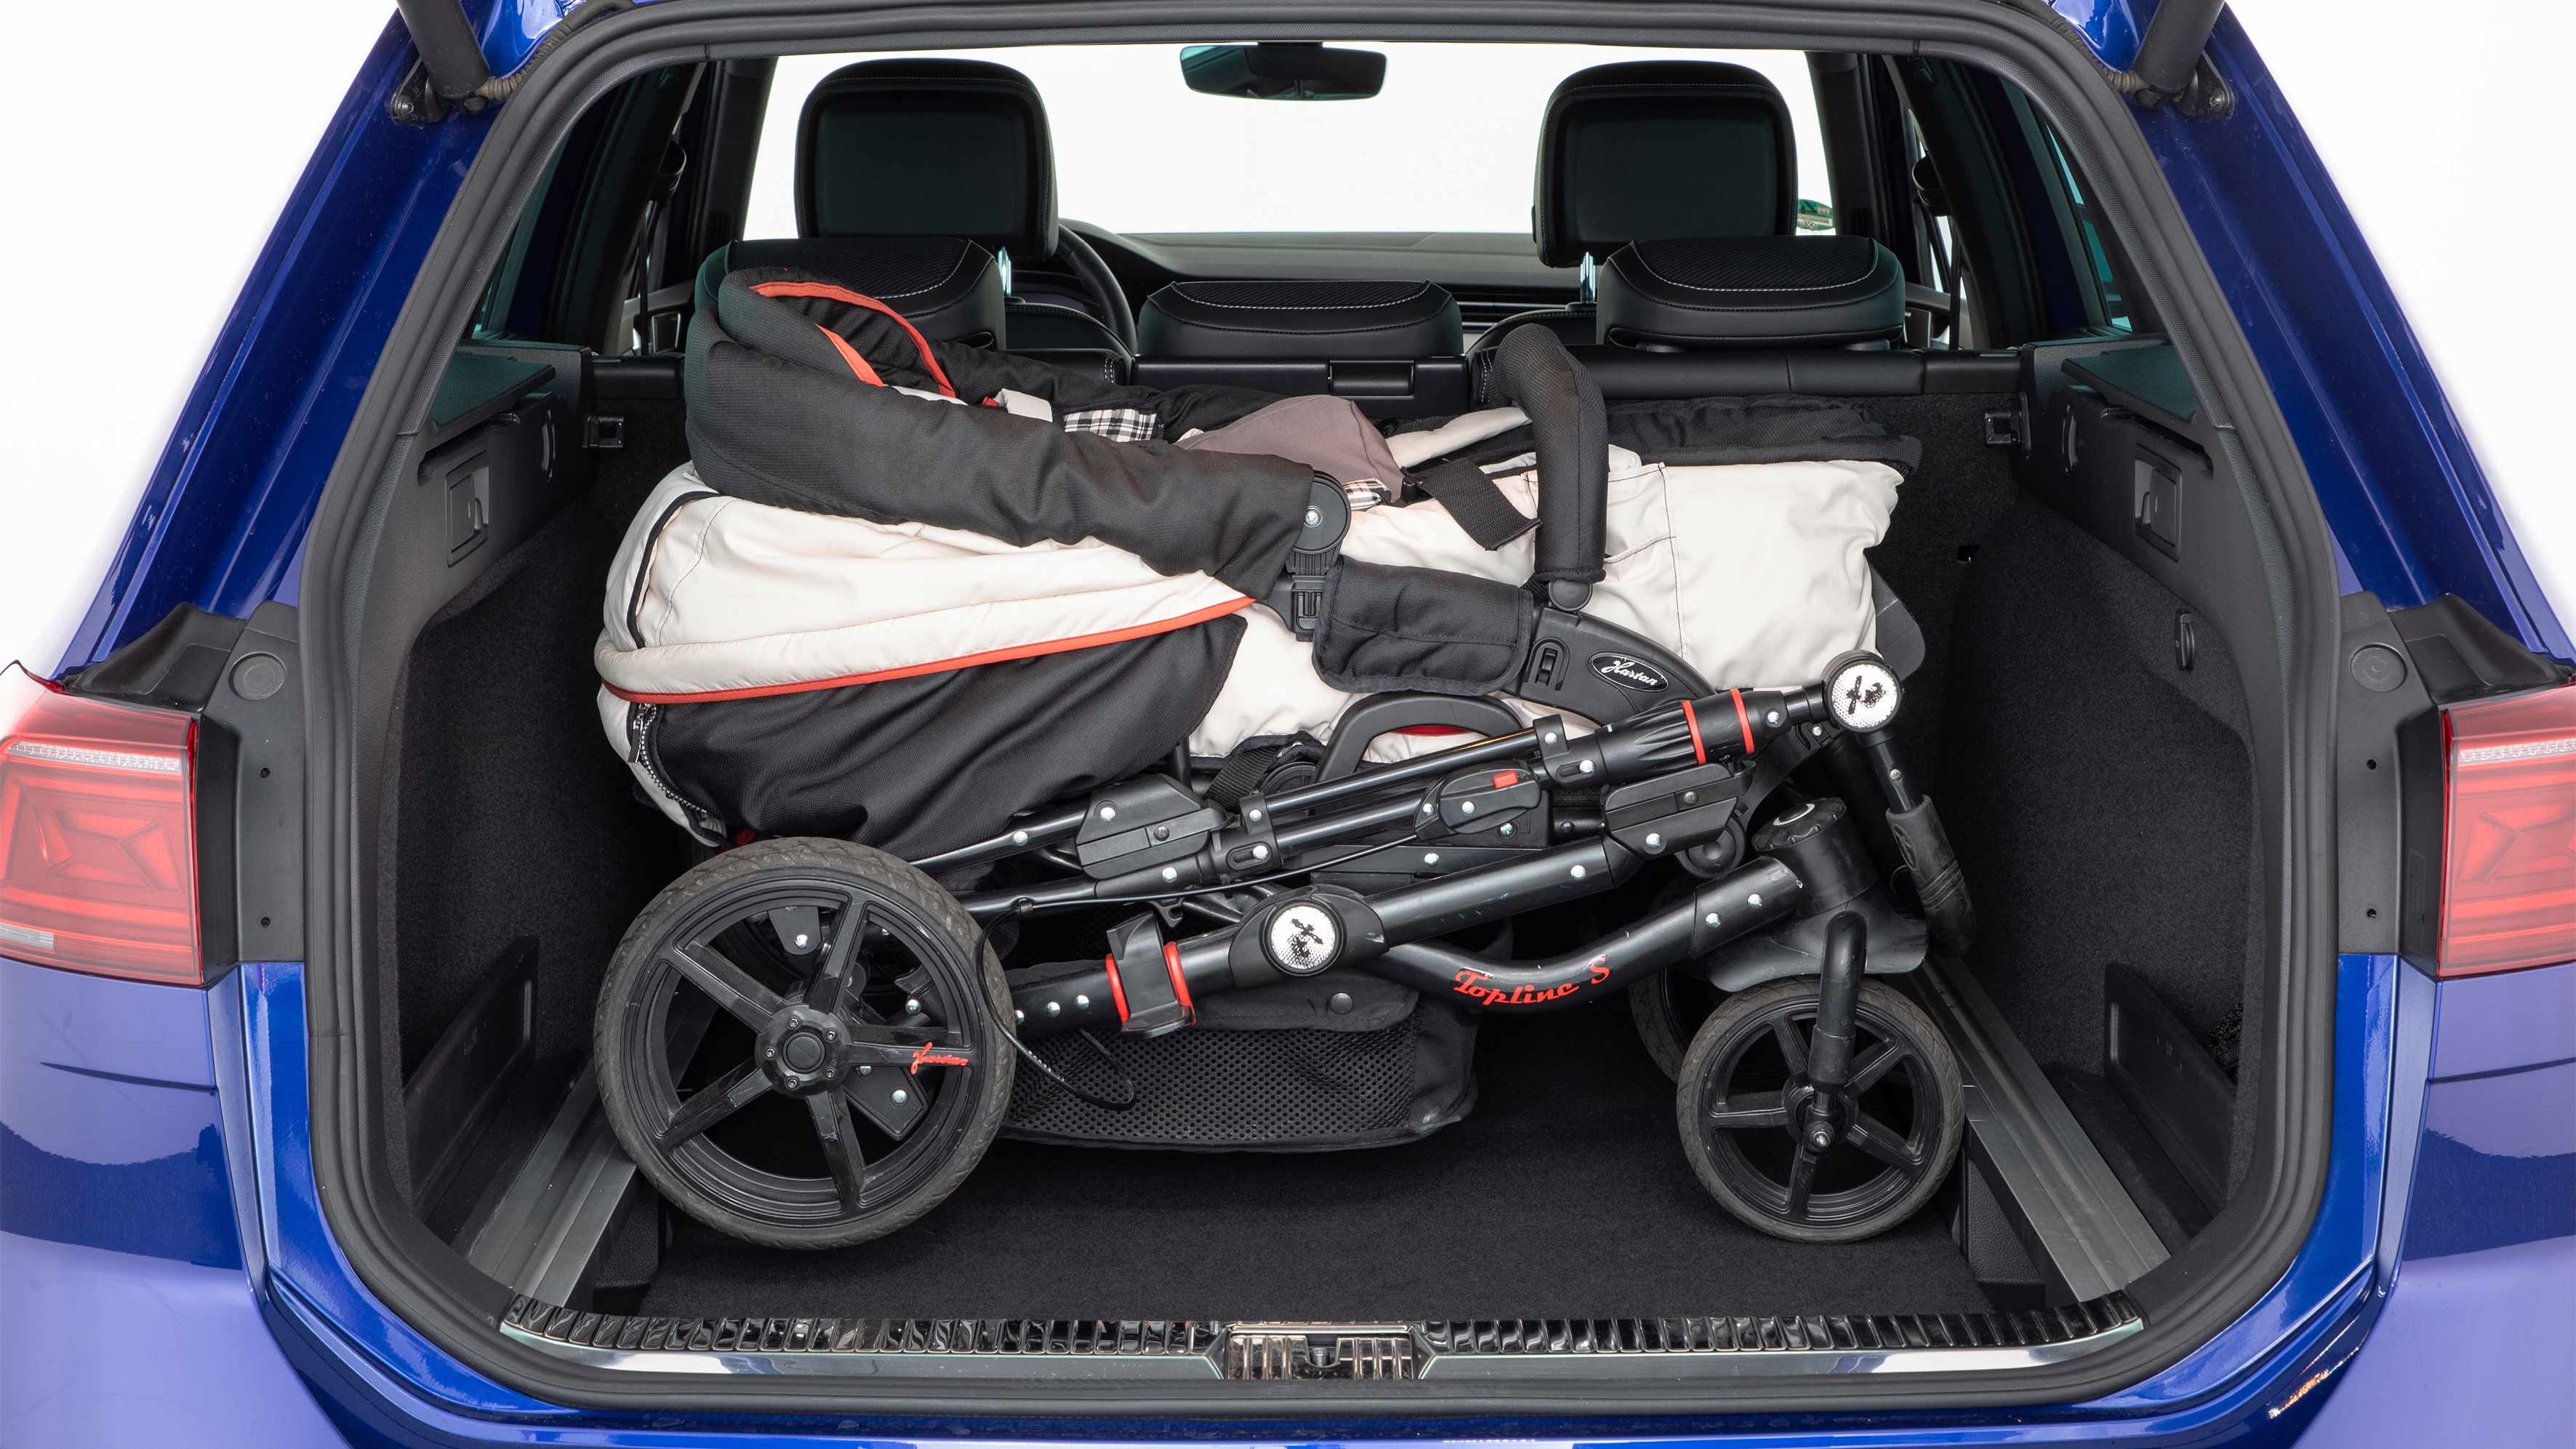 Familienautos: Wie Sie Kinderwagen und Co. gut im Kofferraum transportieren